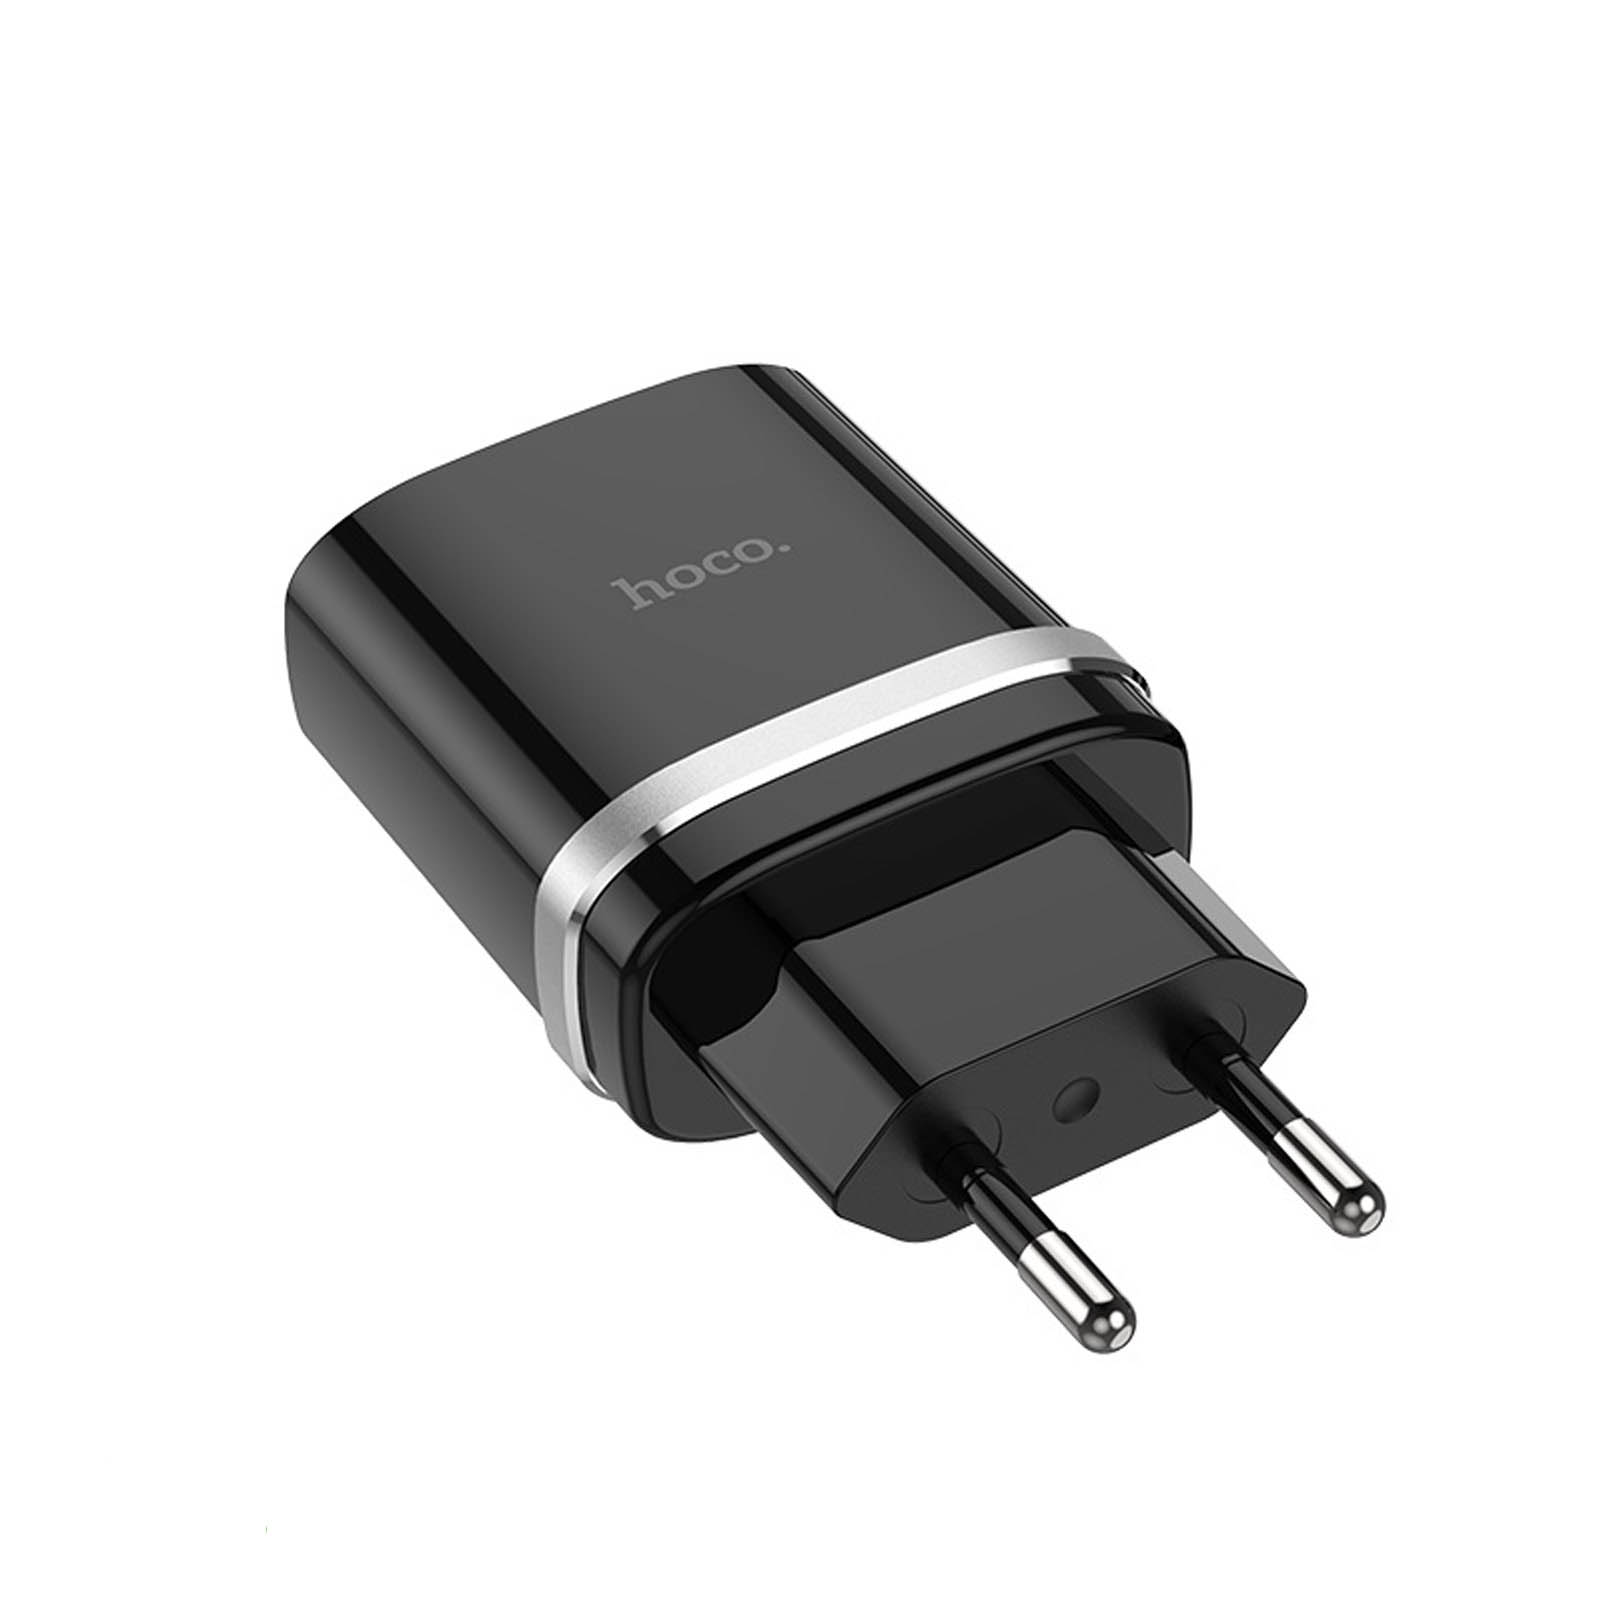 CЗУ (Сетевое зарядное устройство) HOCO C12Q Smart QC3.0, 1 USB, c кабелем Micro USB, цвет черный